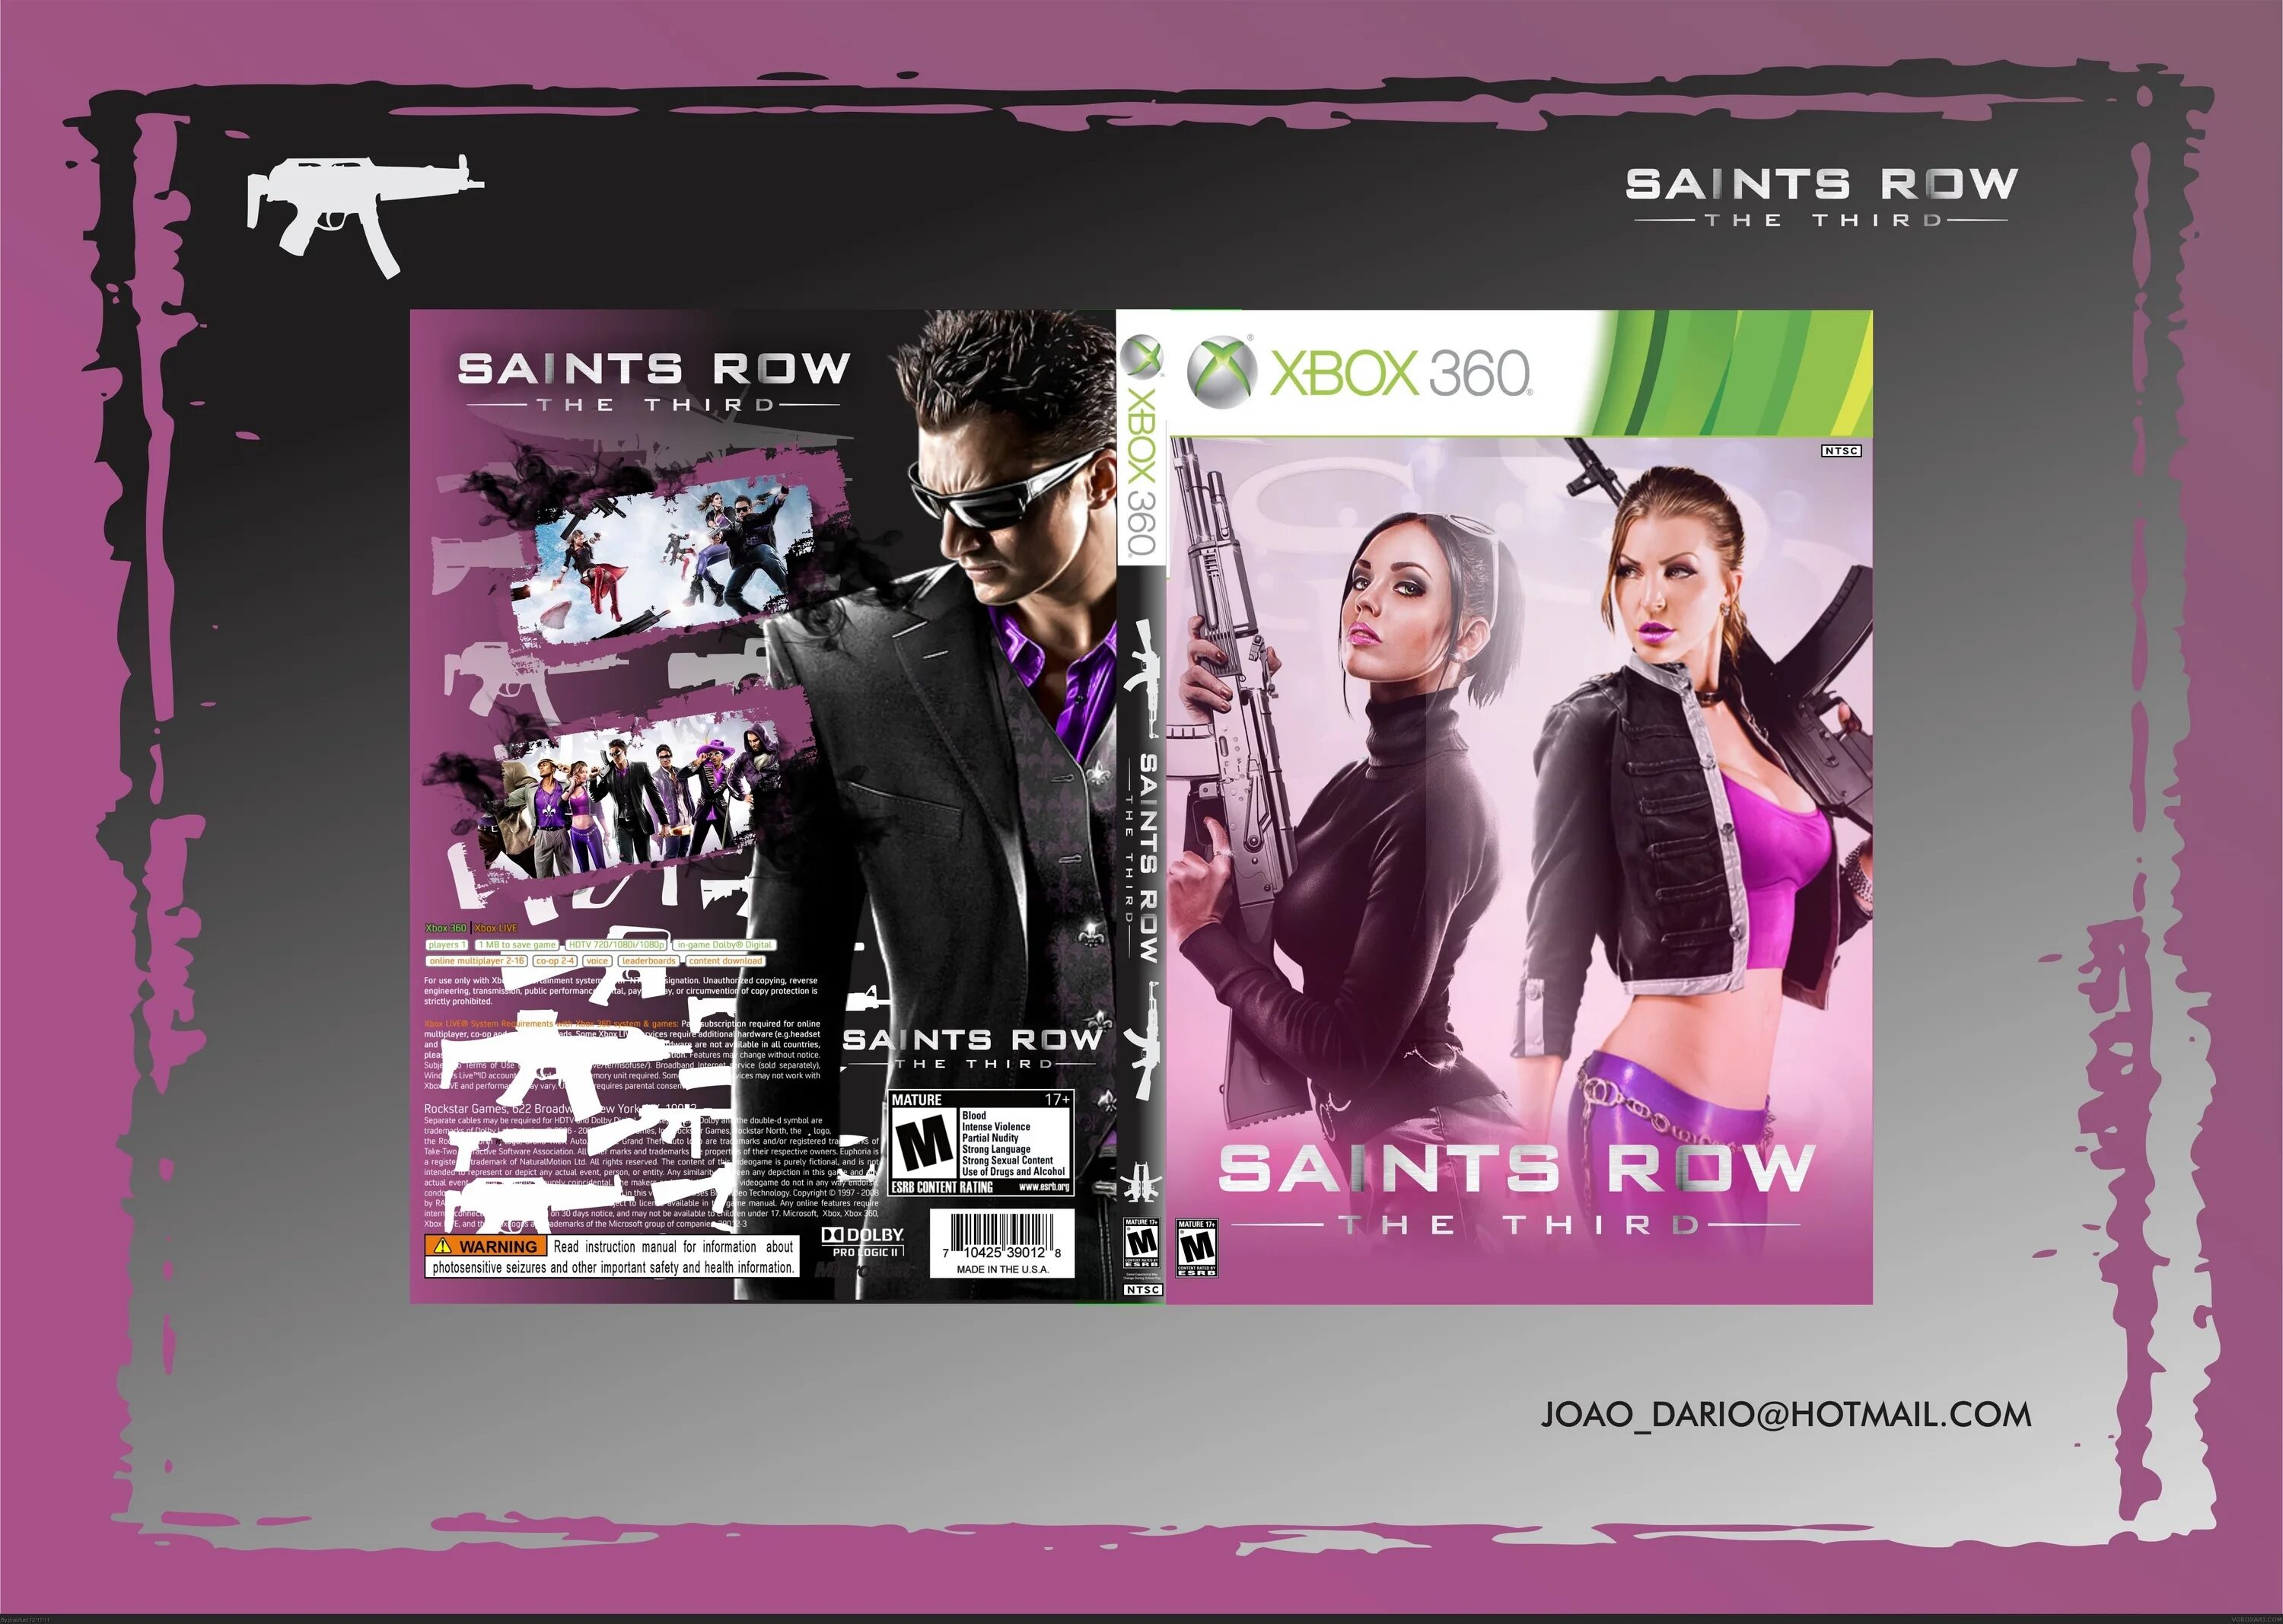 Saints row отзывы. Saints Row Xbox 360 обложка. Saints Row the third Xbox 360. Saints Row 3 Xbox 360. Saints Row the third обложка.